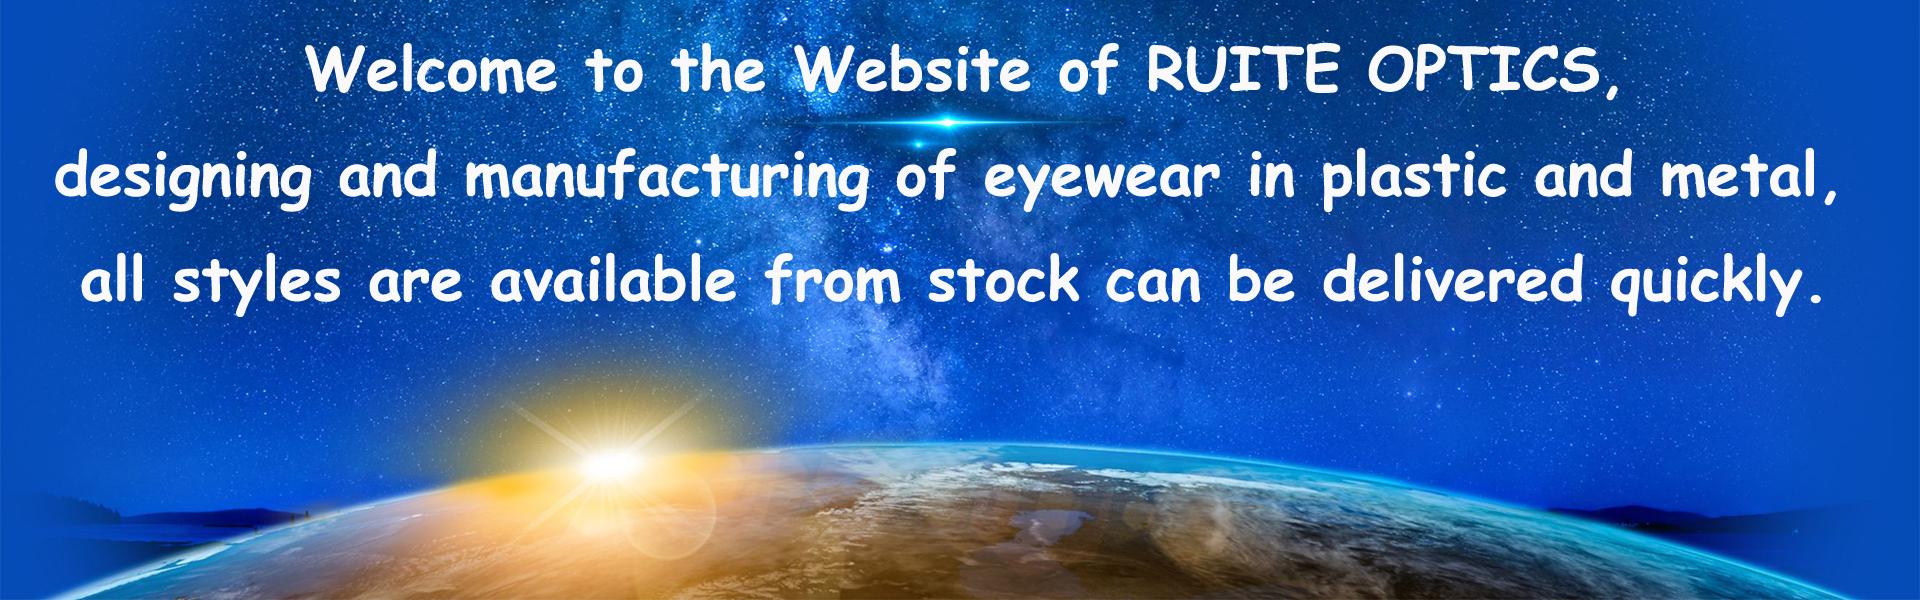 준비되어있는 재고 안경, 안경, 준비된 재고 안경,Wenzhou Ruite Optics Co.,Ltd